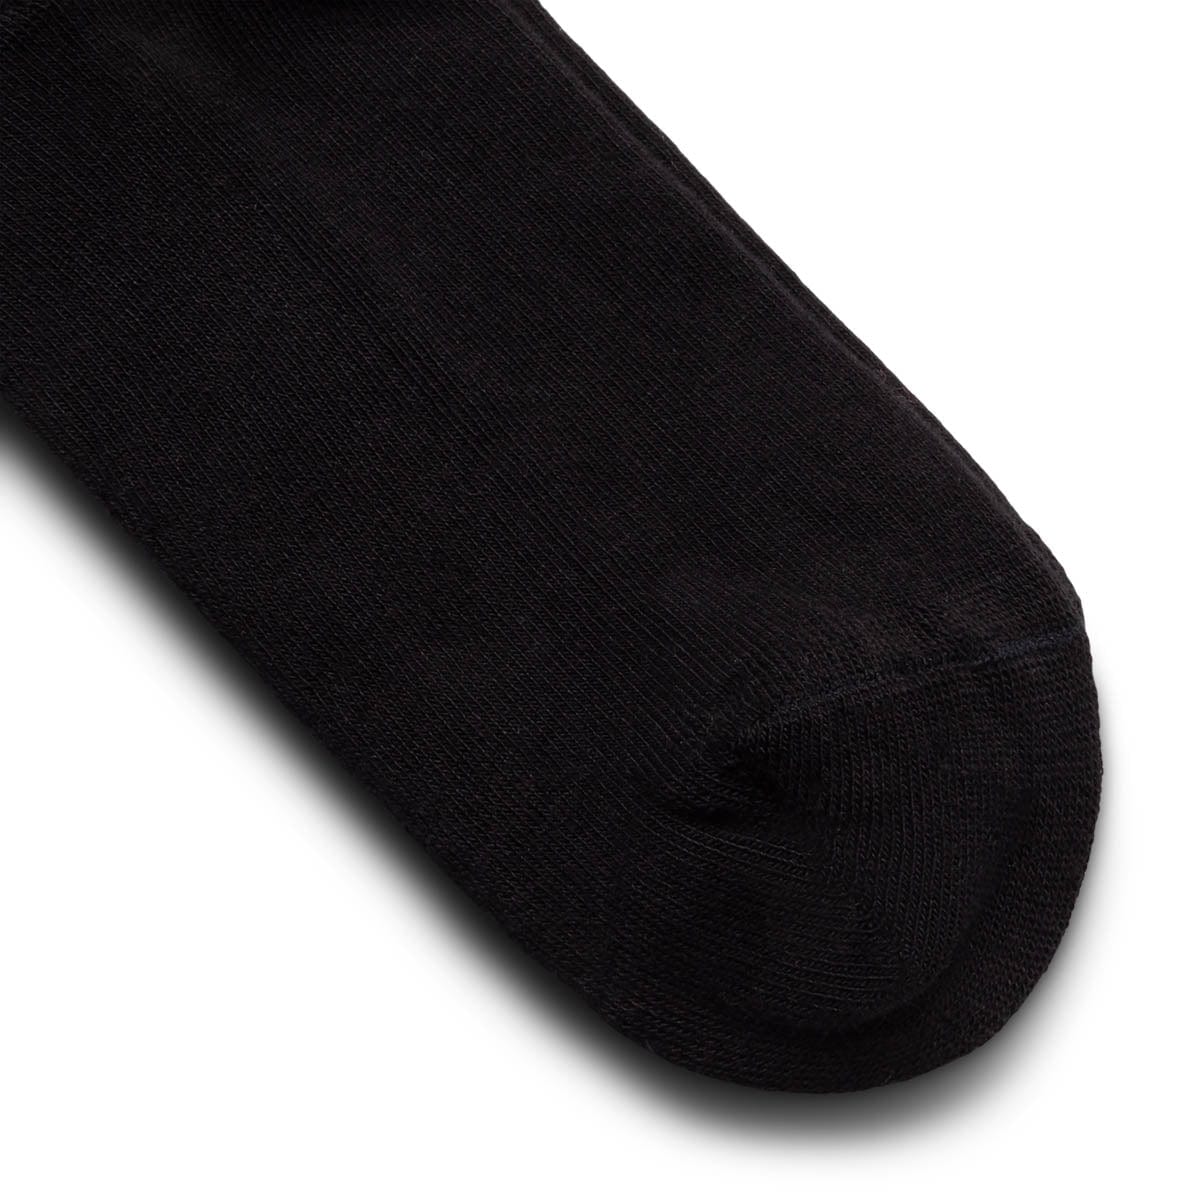 Rassvet Socks BLACK / L GOTH SOCKS